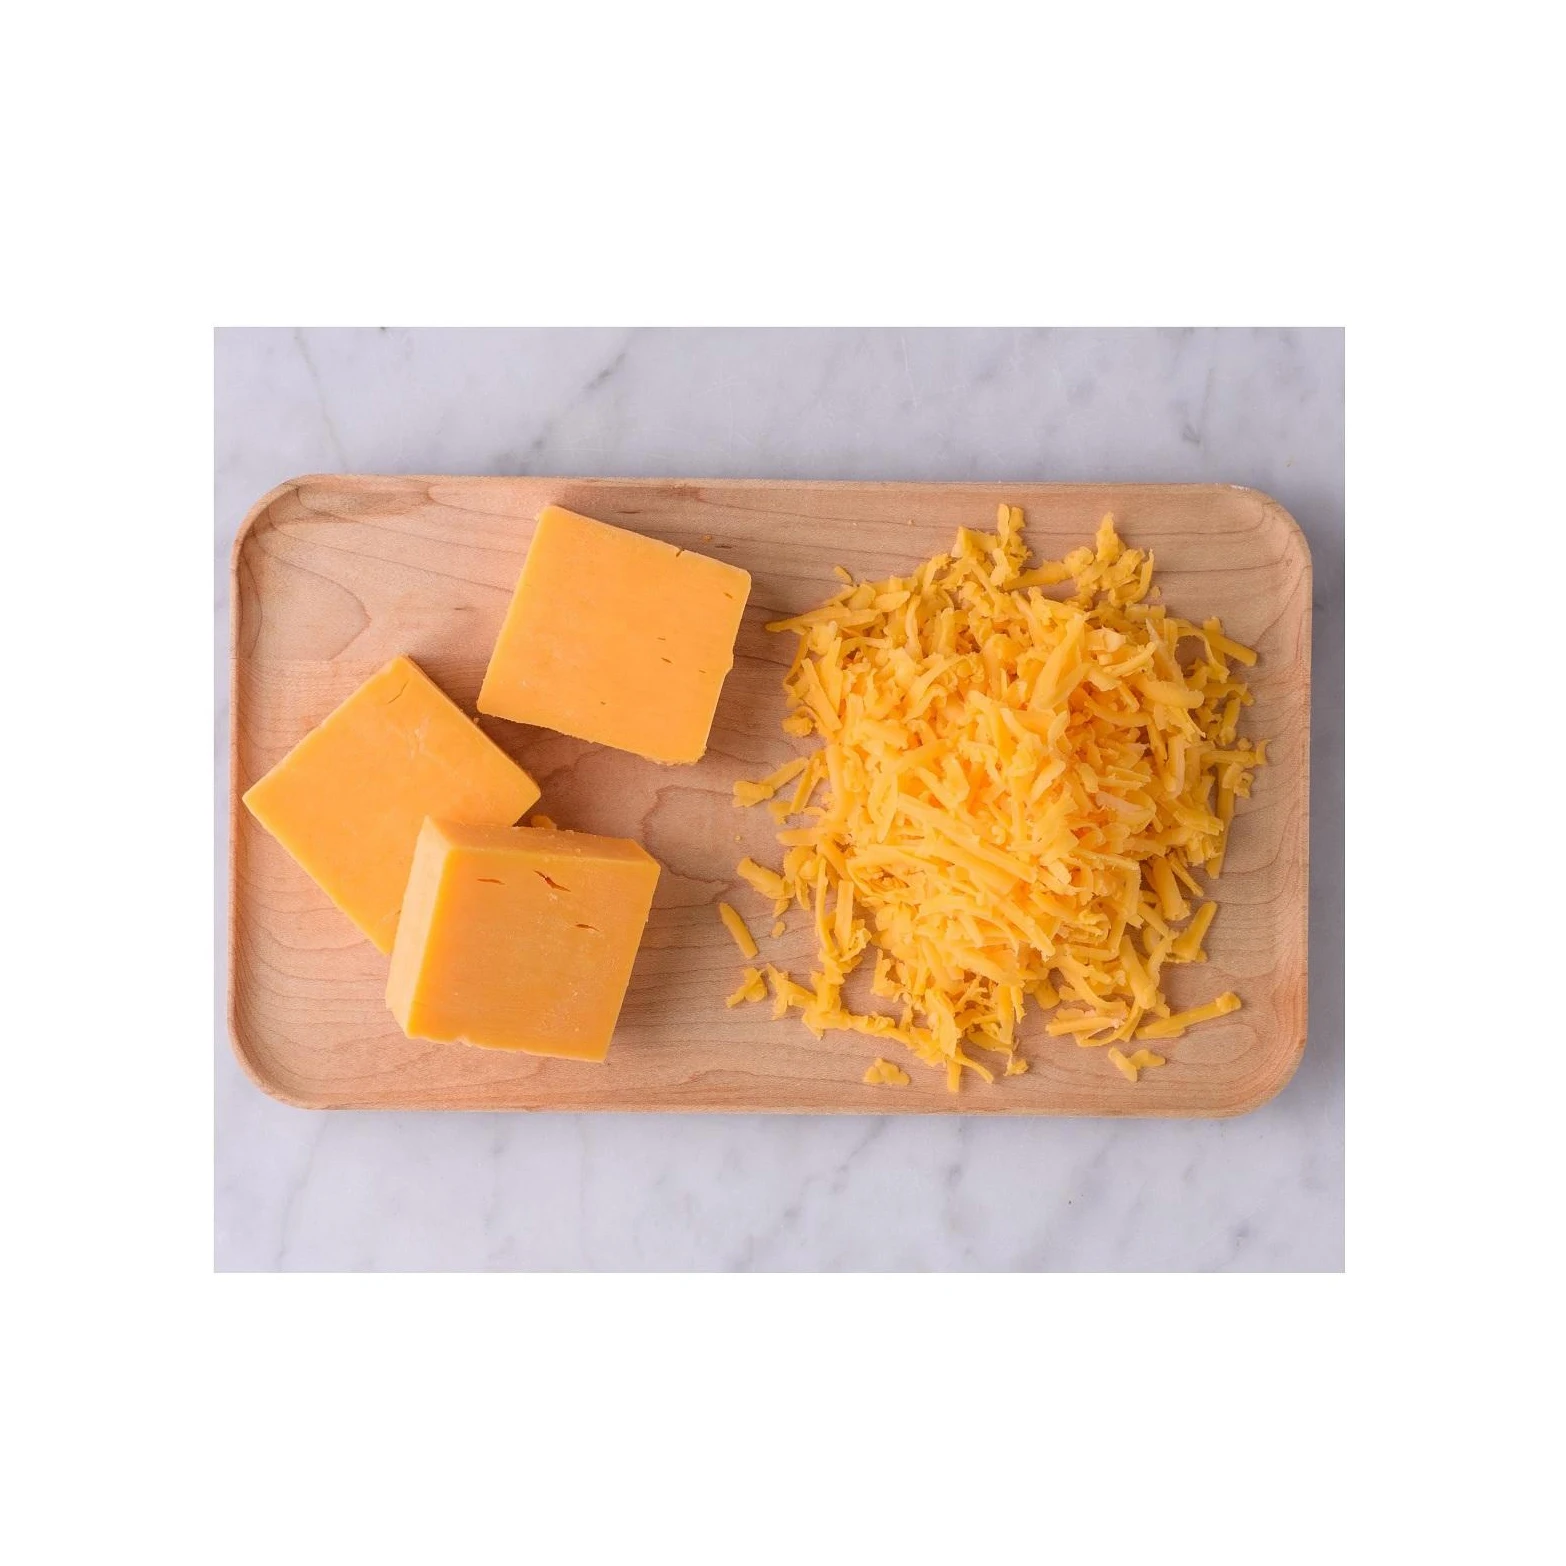 Factory Price Unripen 2.5 Kg Tray Fresh Mozzarella Cheese Brands Mozzarella Cheese